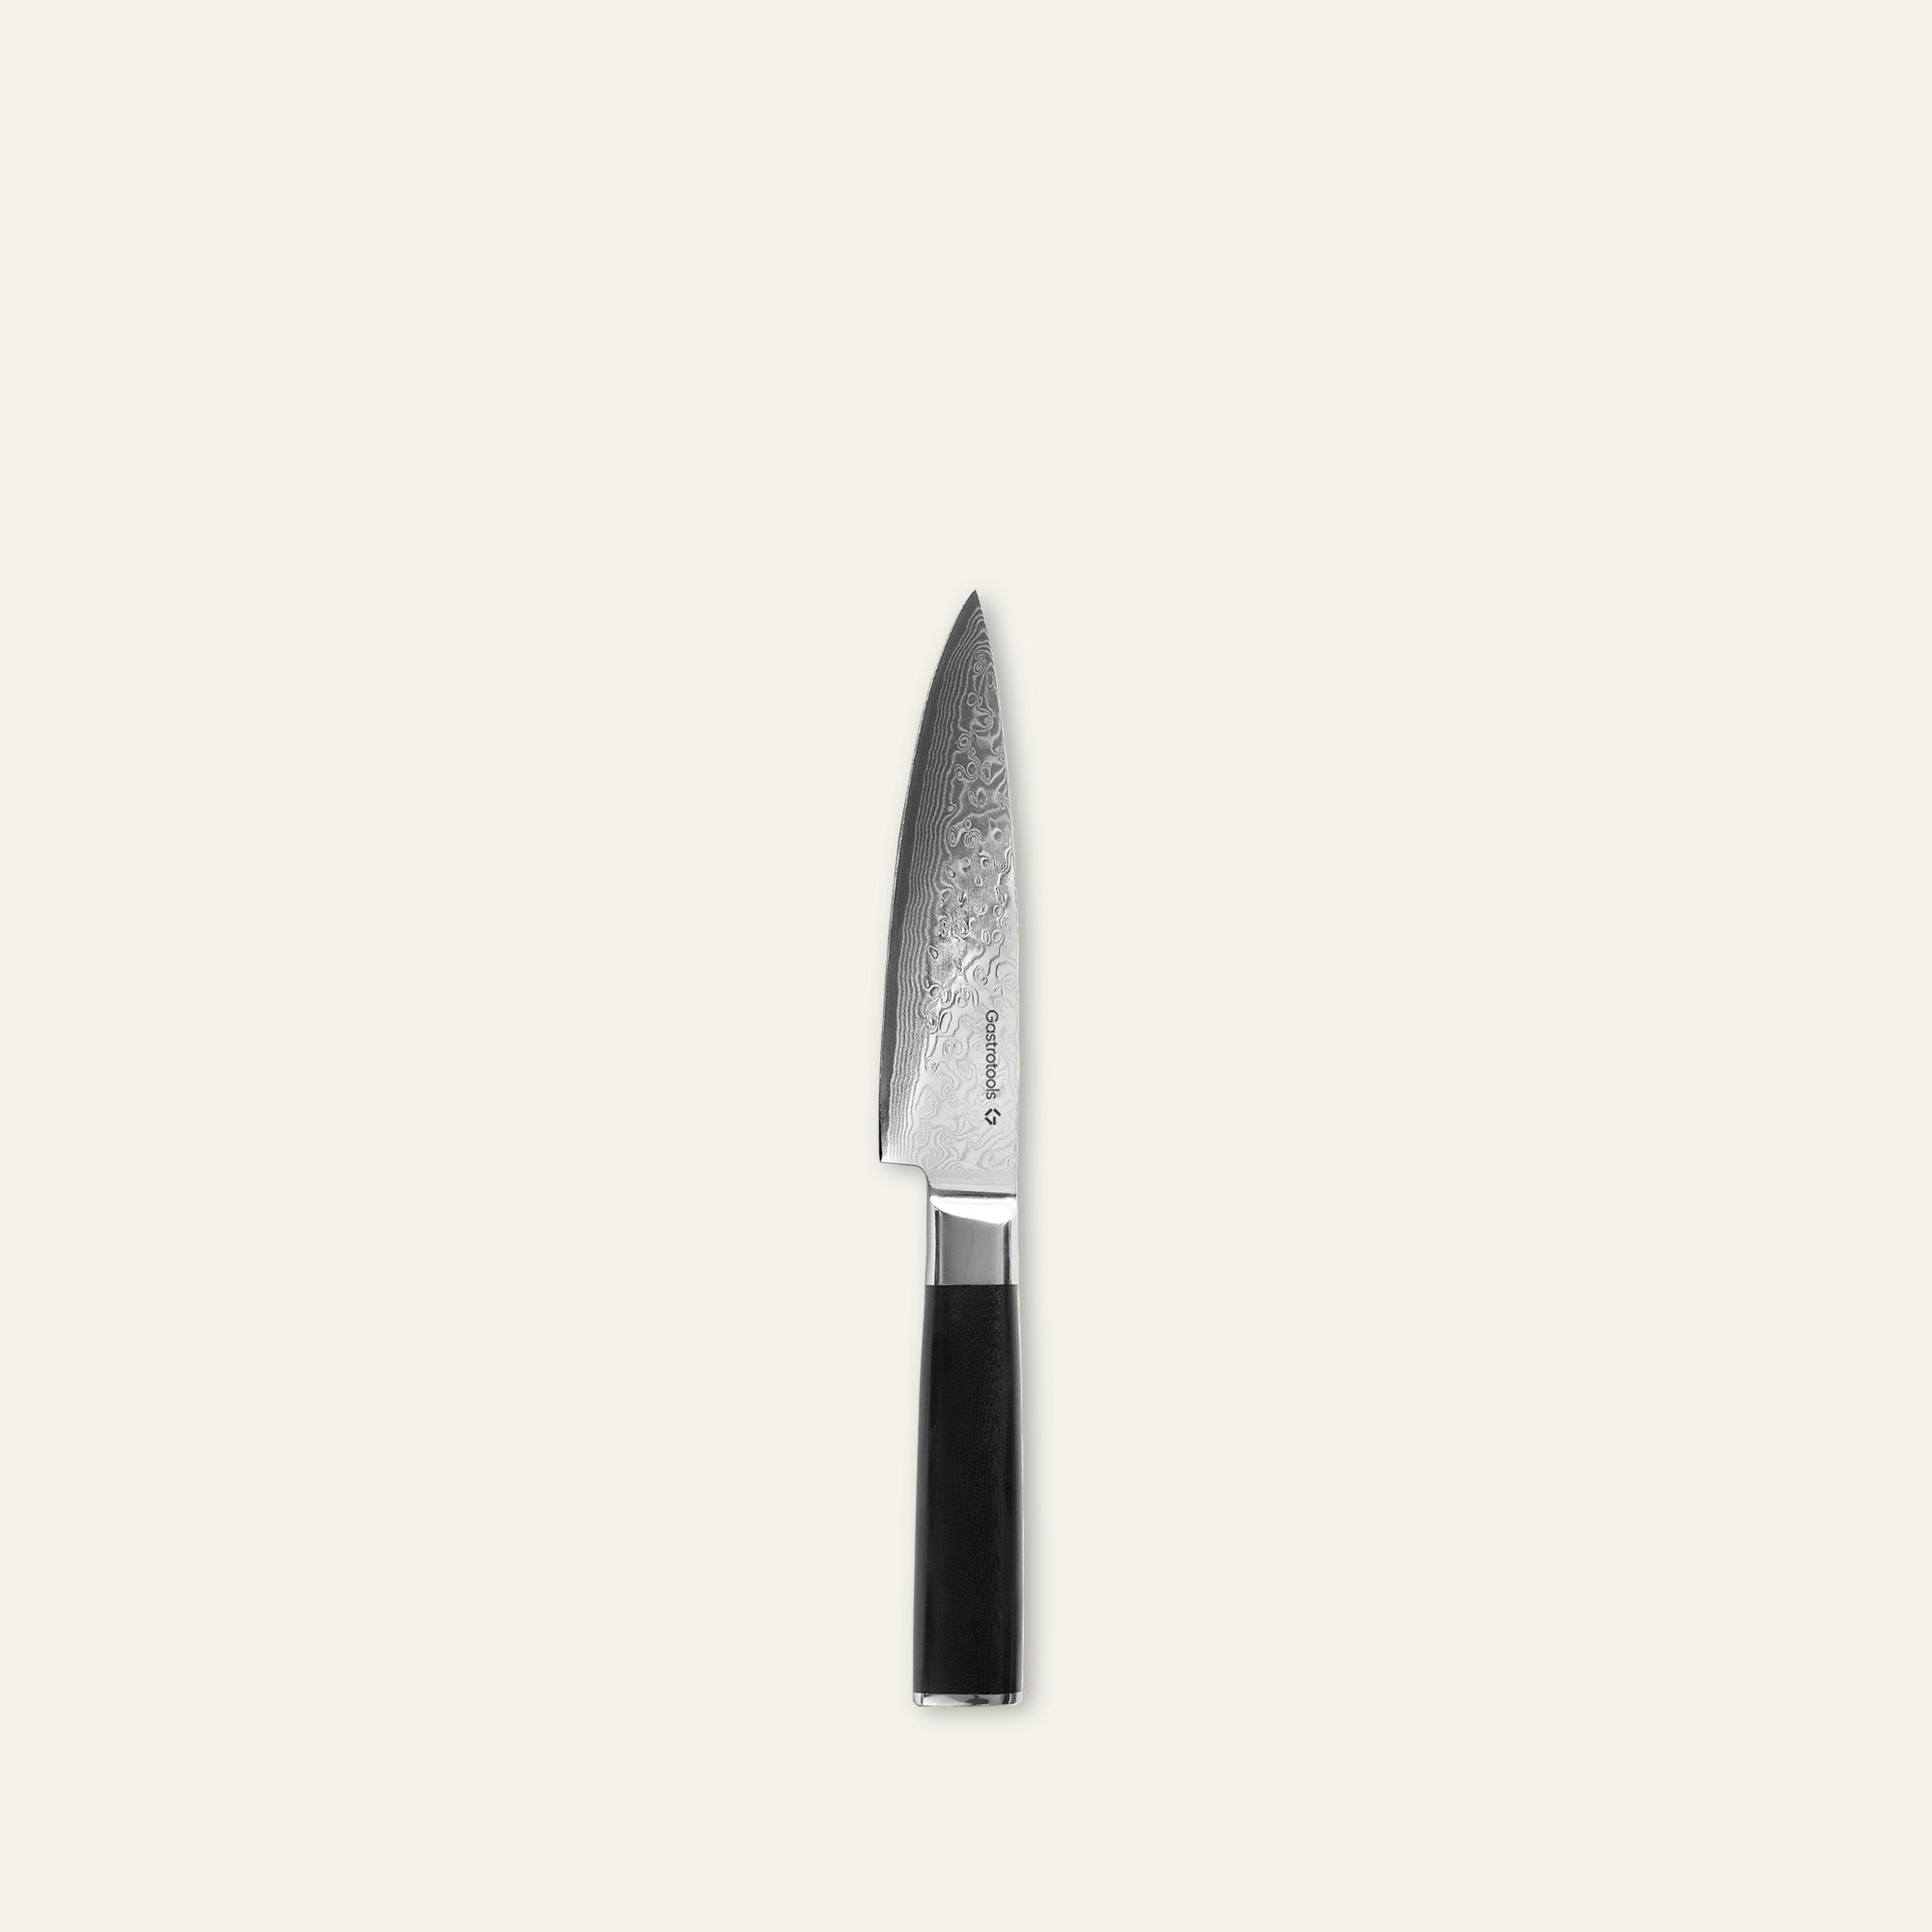 Gastrotools Kokkekniv - Japansk Damaskus Stål - 15 cm - 67 Lag - VG10 Kerne - Sort